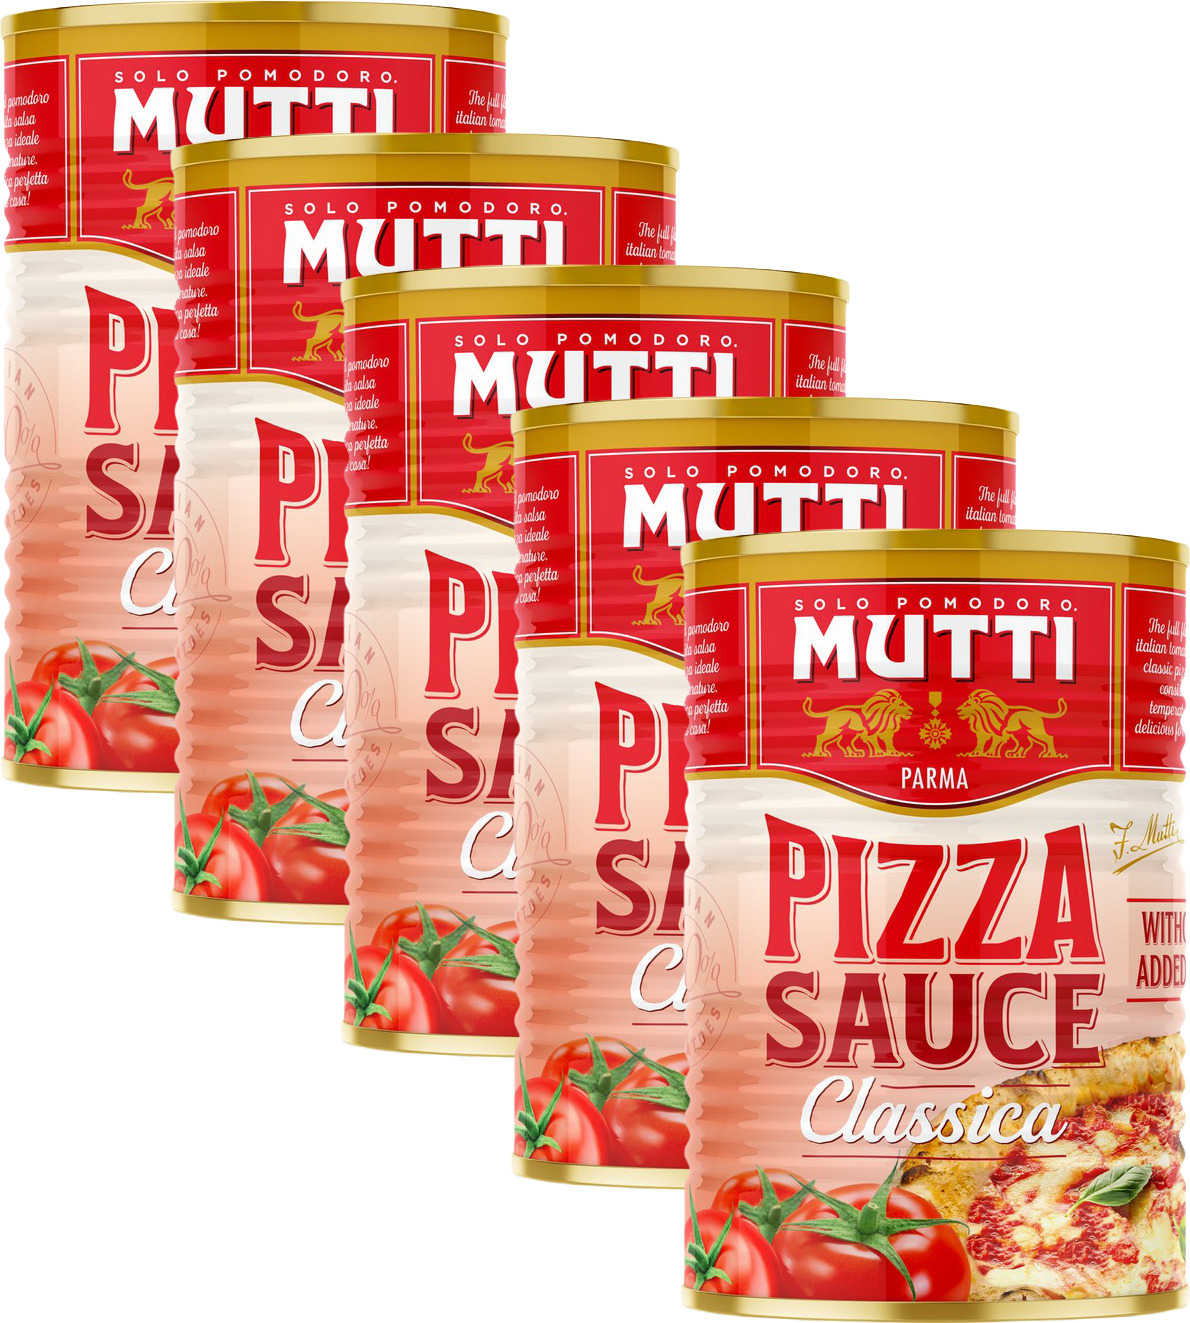 mutti пицца соус купить фото 59